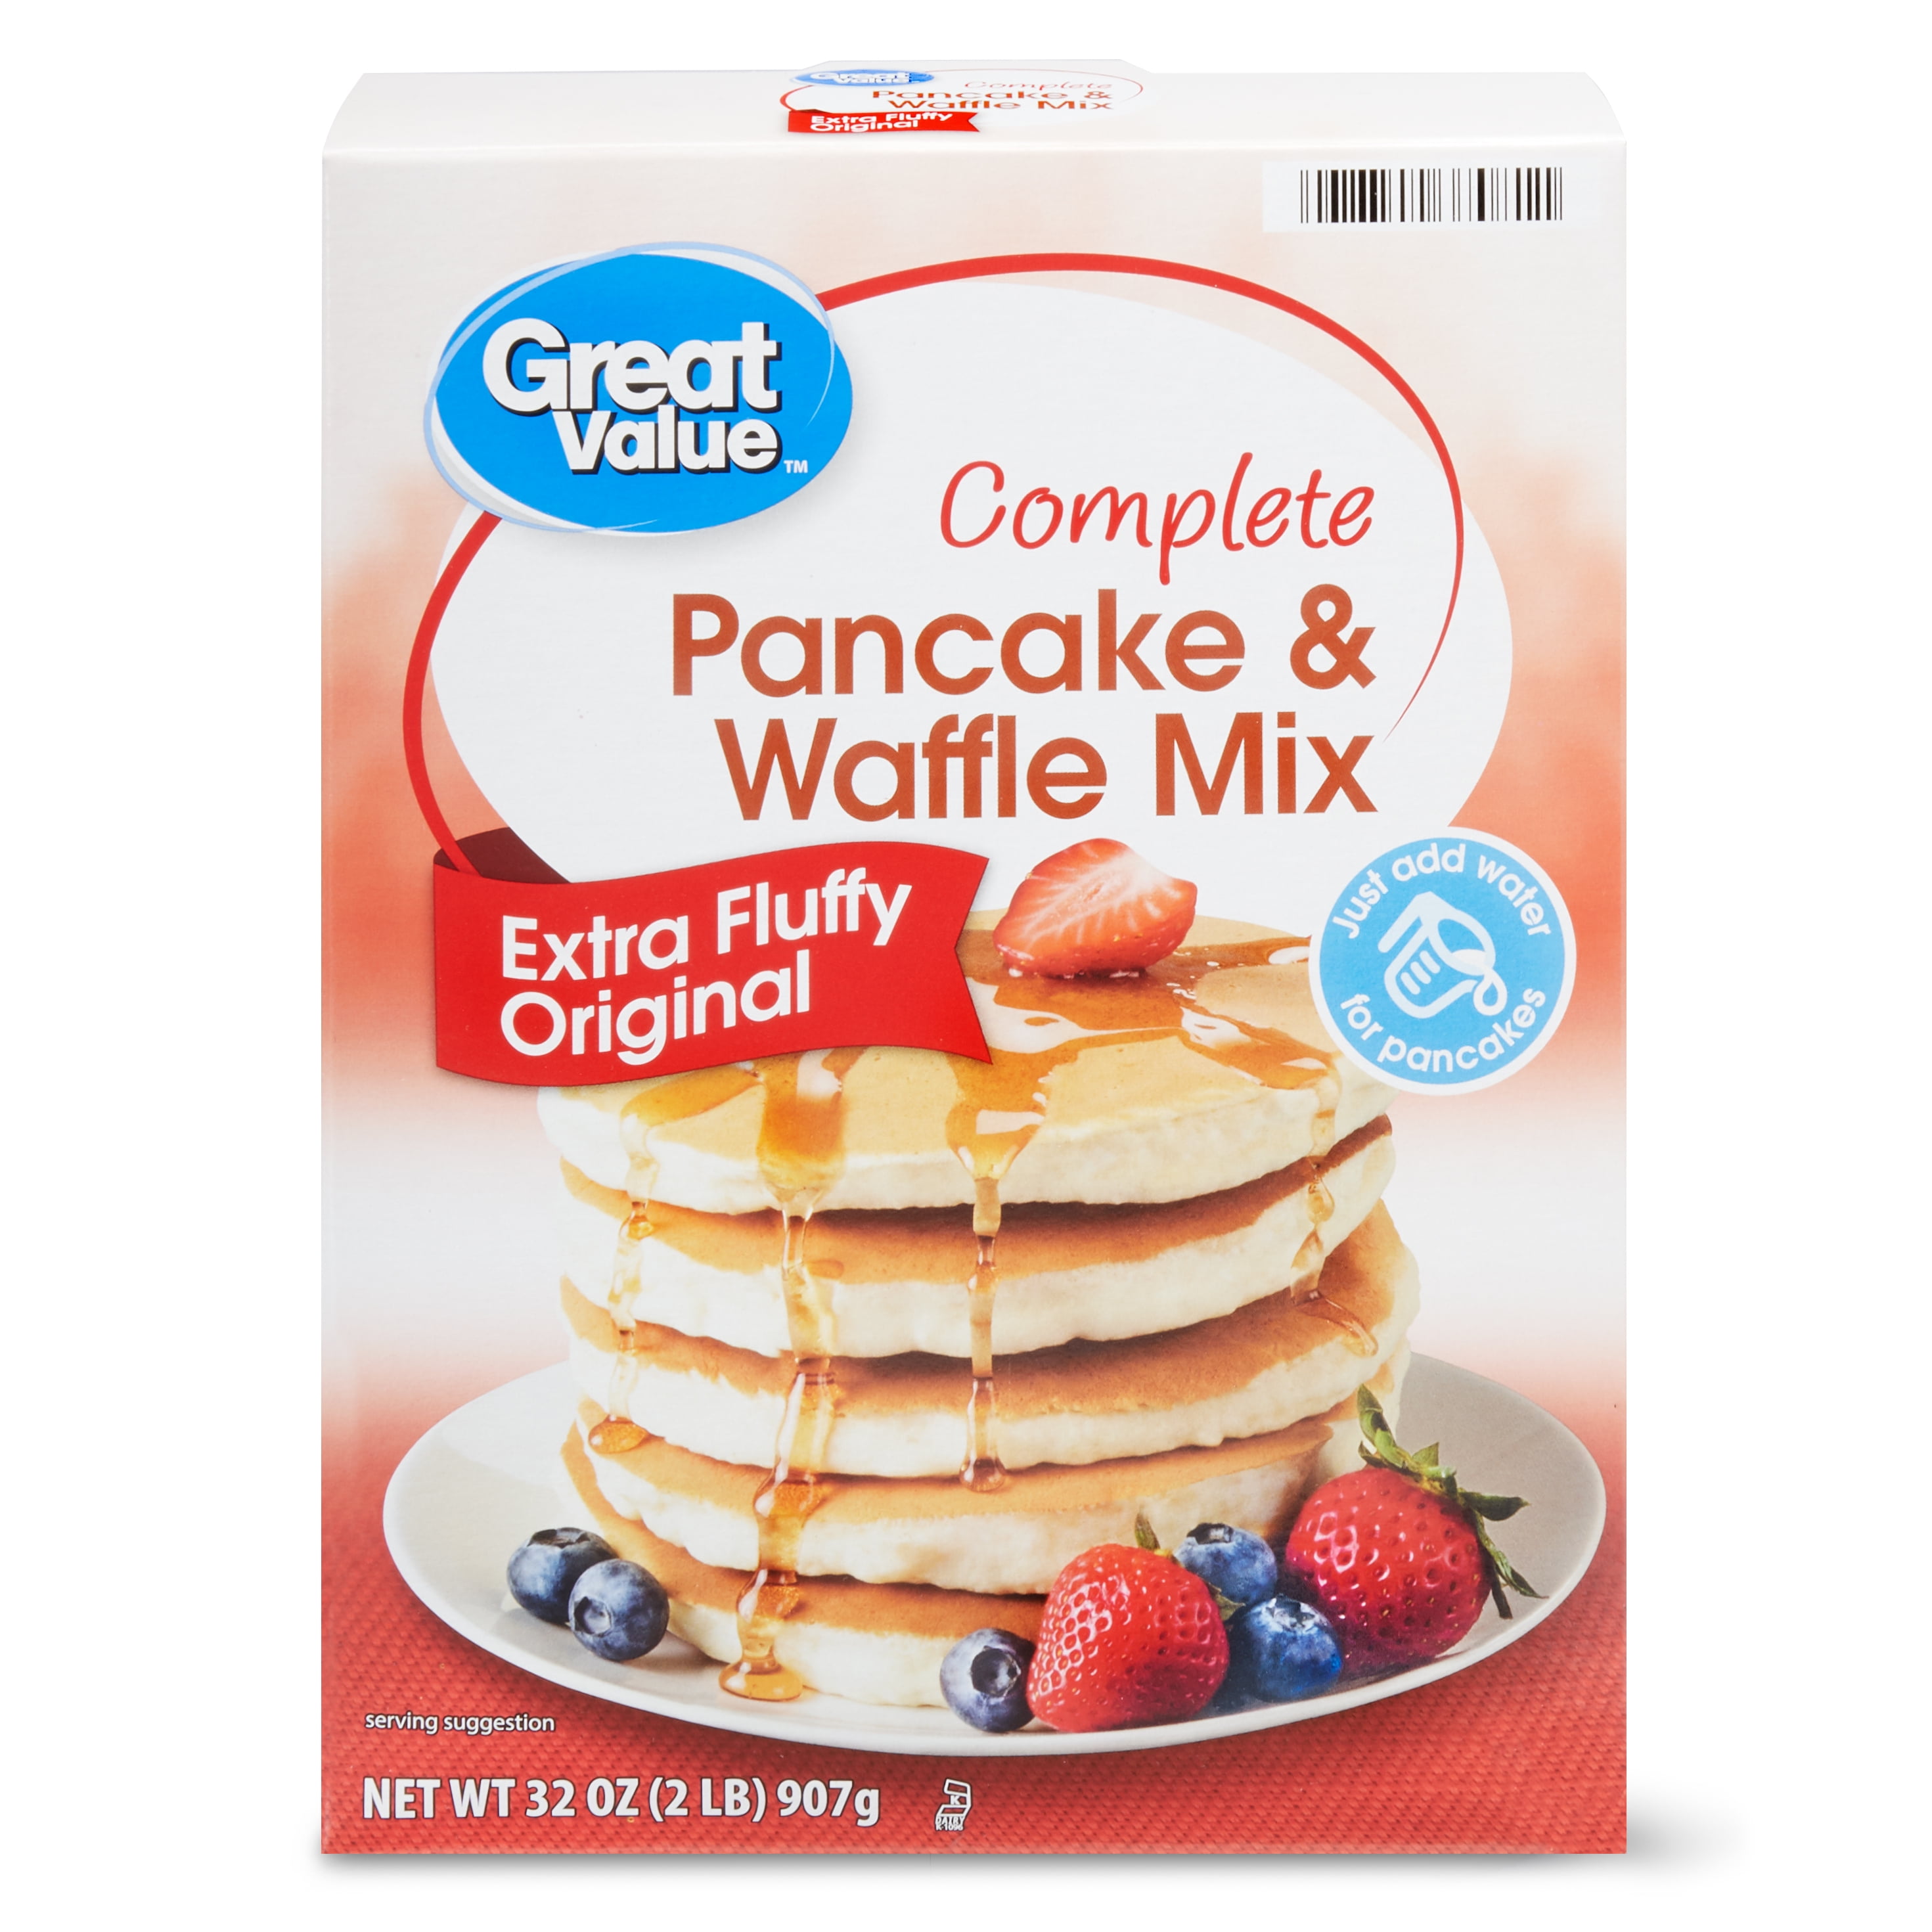 Holiday Pancake Kits Starting at Just $5.95 at Walmart